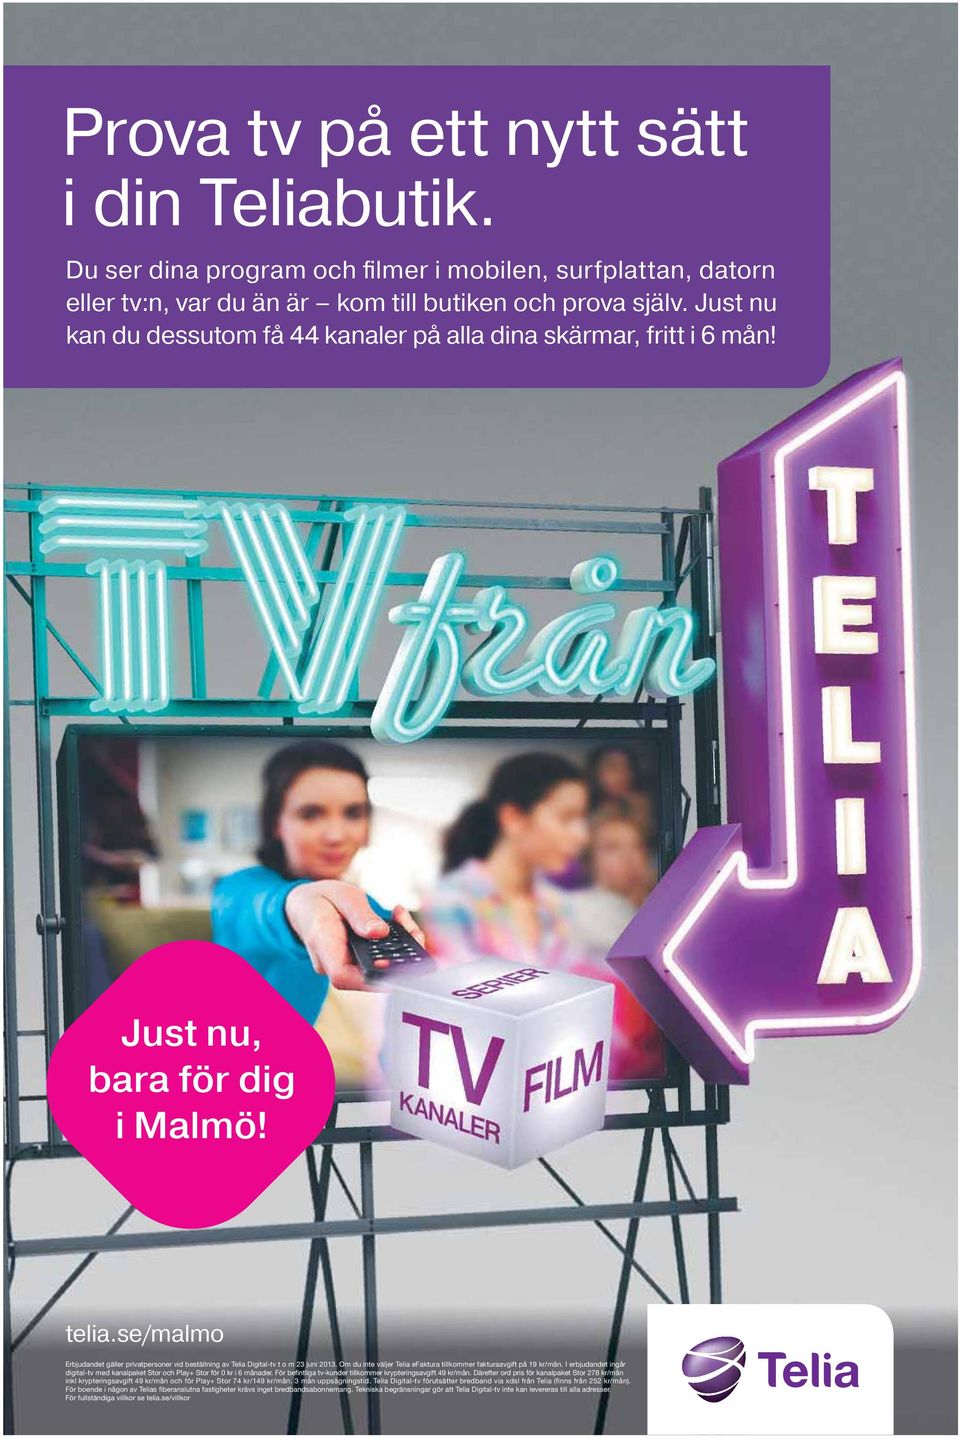 se/malmo Erbjudandet gäller privatpersoner vid beställning av Telia Digital-tv t o m 23 juni 2013. Om du inte väljer Telia efaktura tillkommer fakturaavgift på 19 kr/mån.